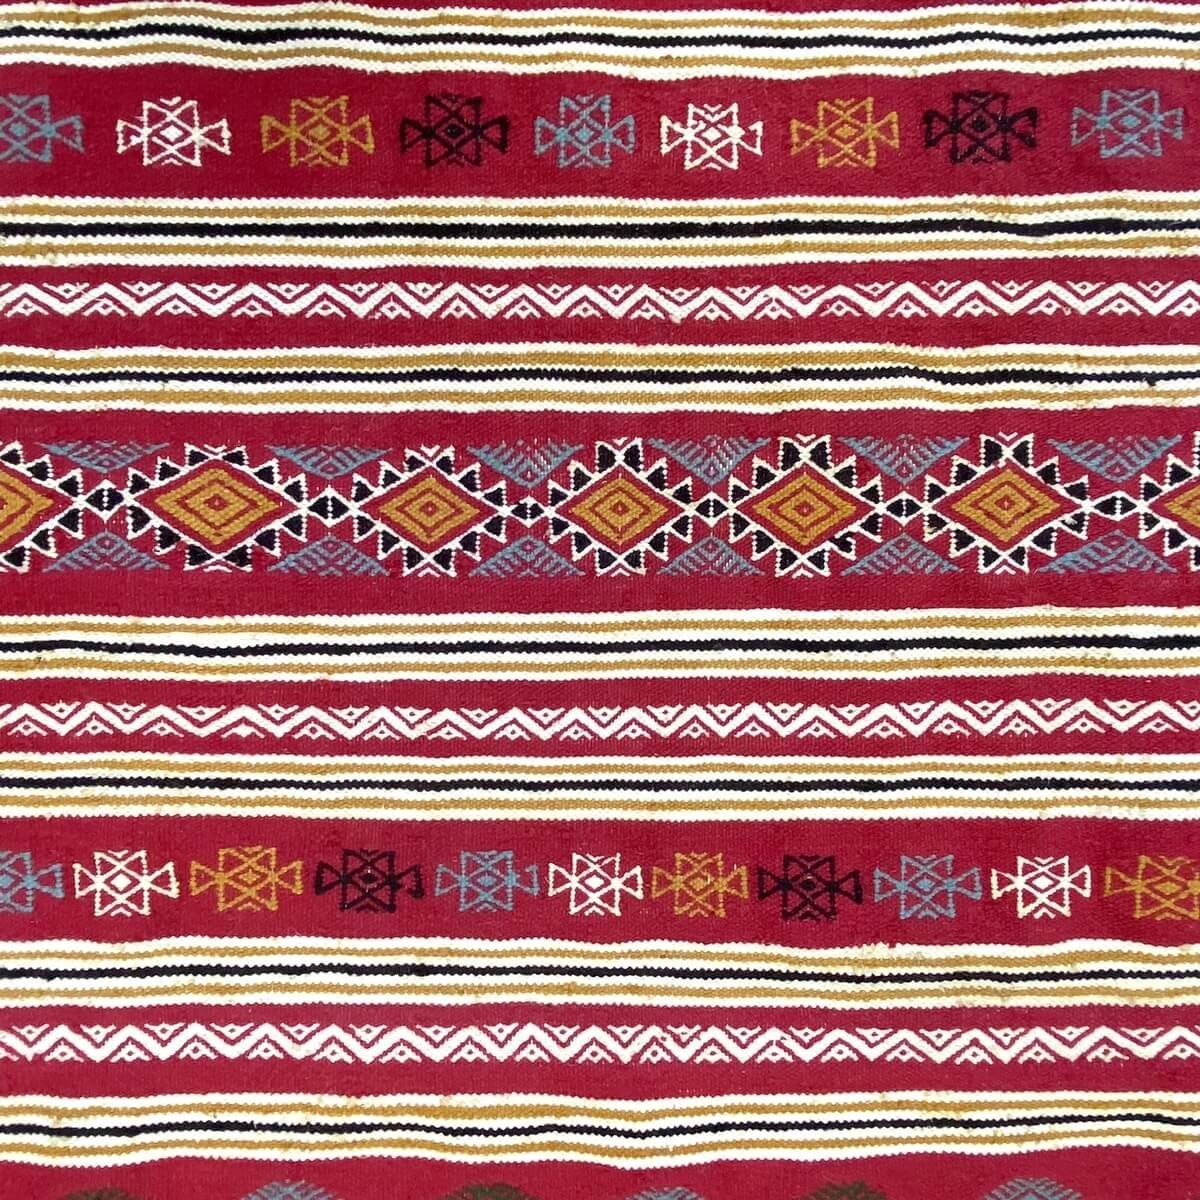 Berber Teppich Teppich Kelim Ifta 116x205 Rot/Orange (Handgewebt, Wolle, Tunesien) Tunesischer Kelim-Teppich im marokkanischen S